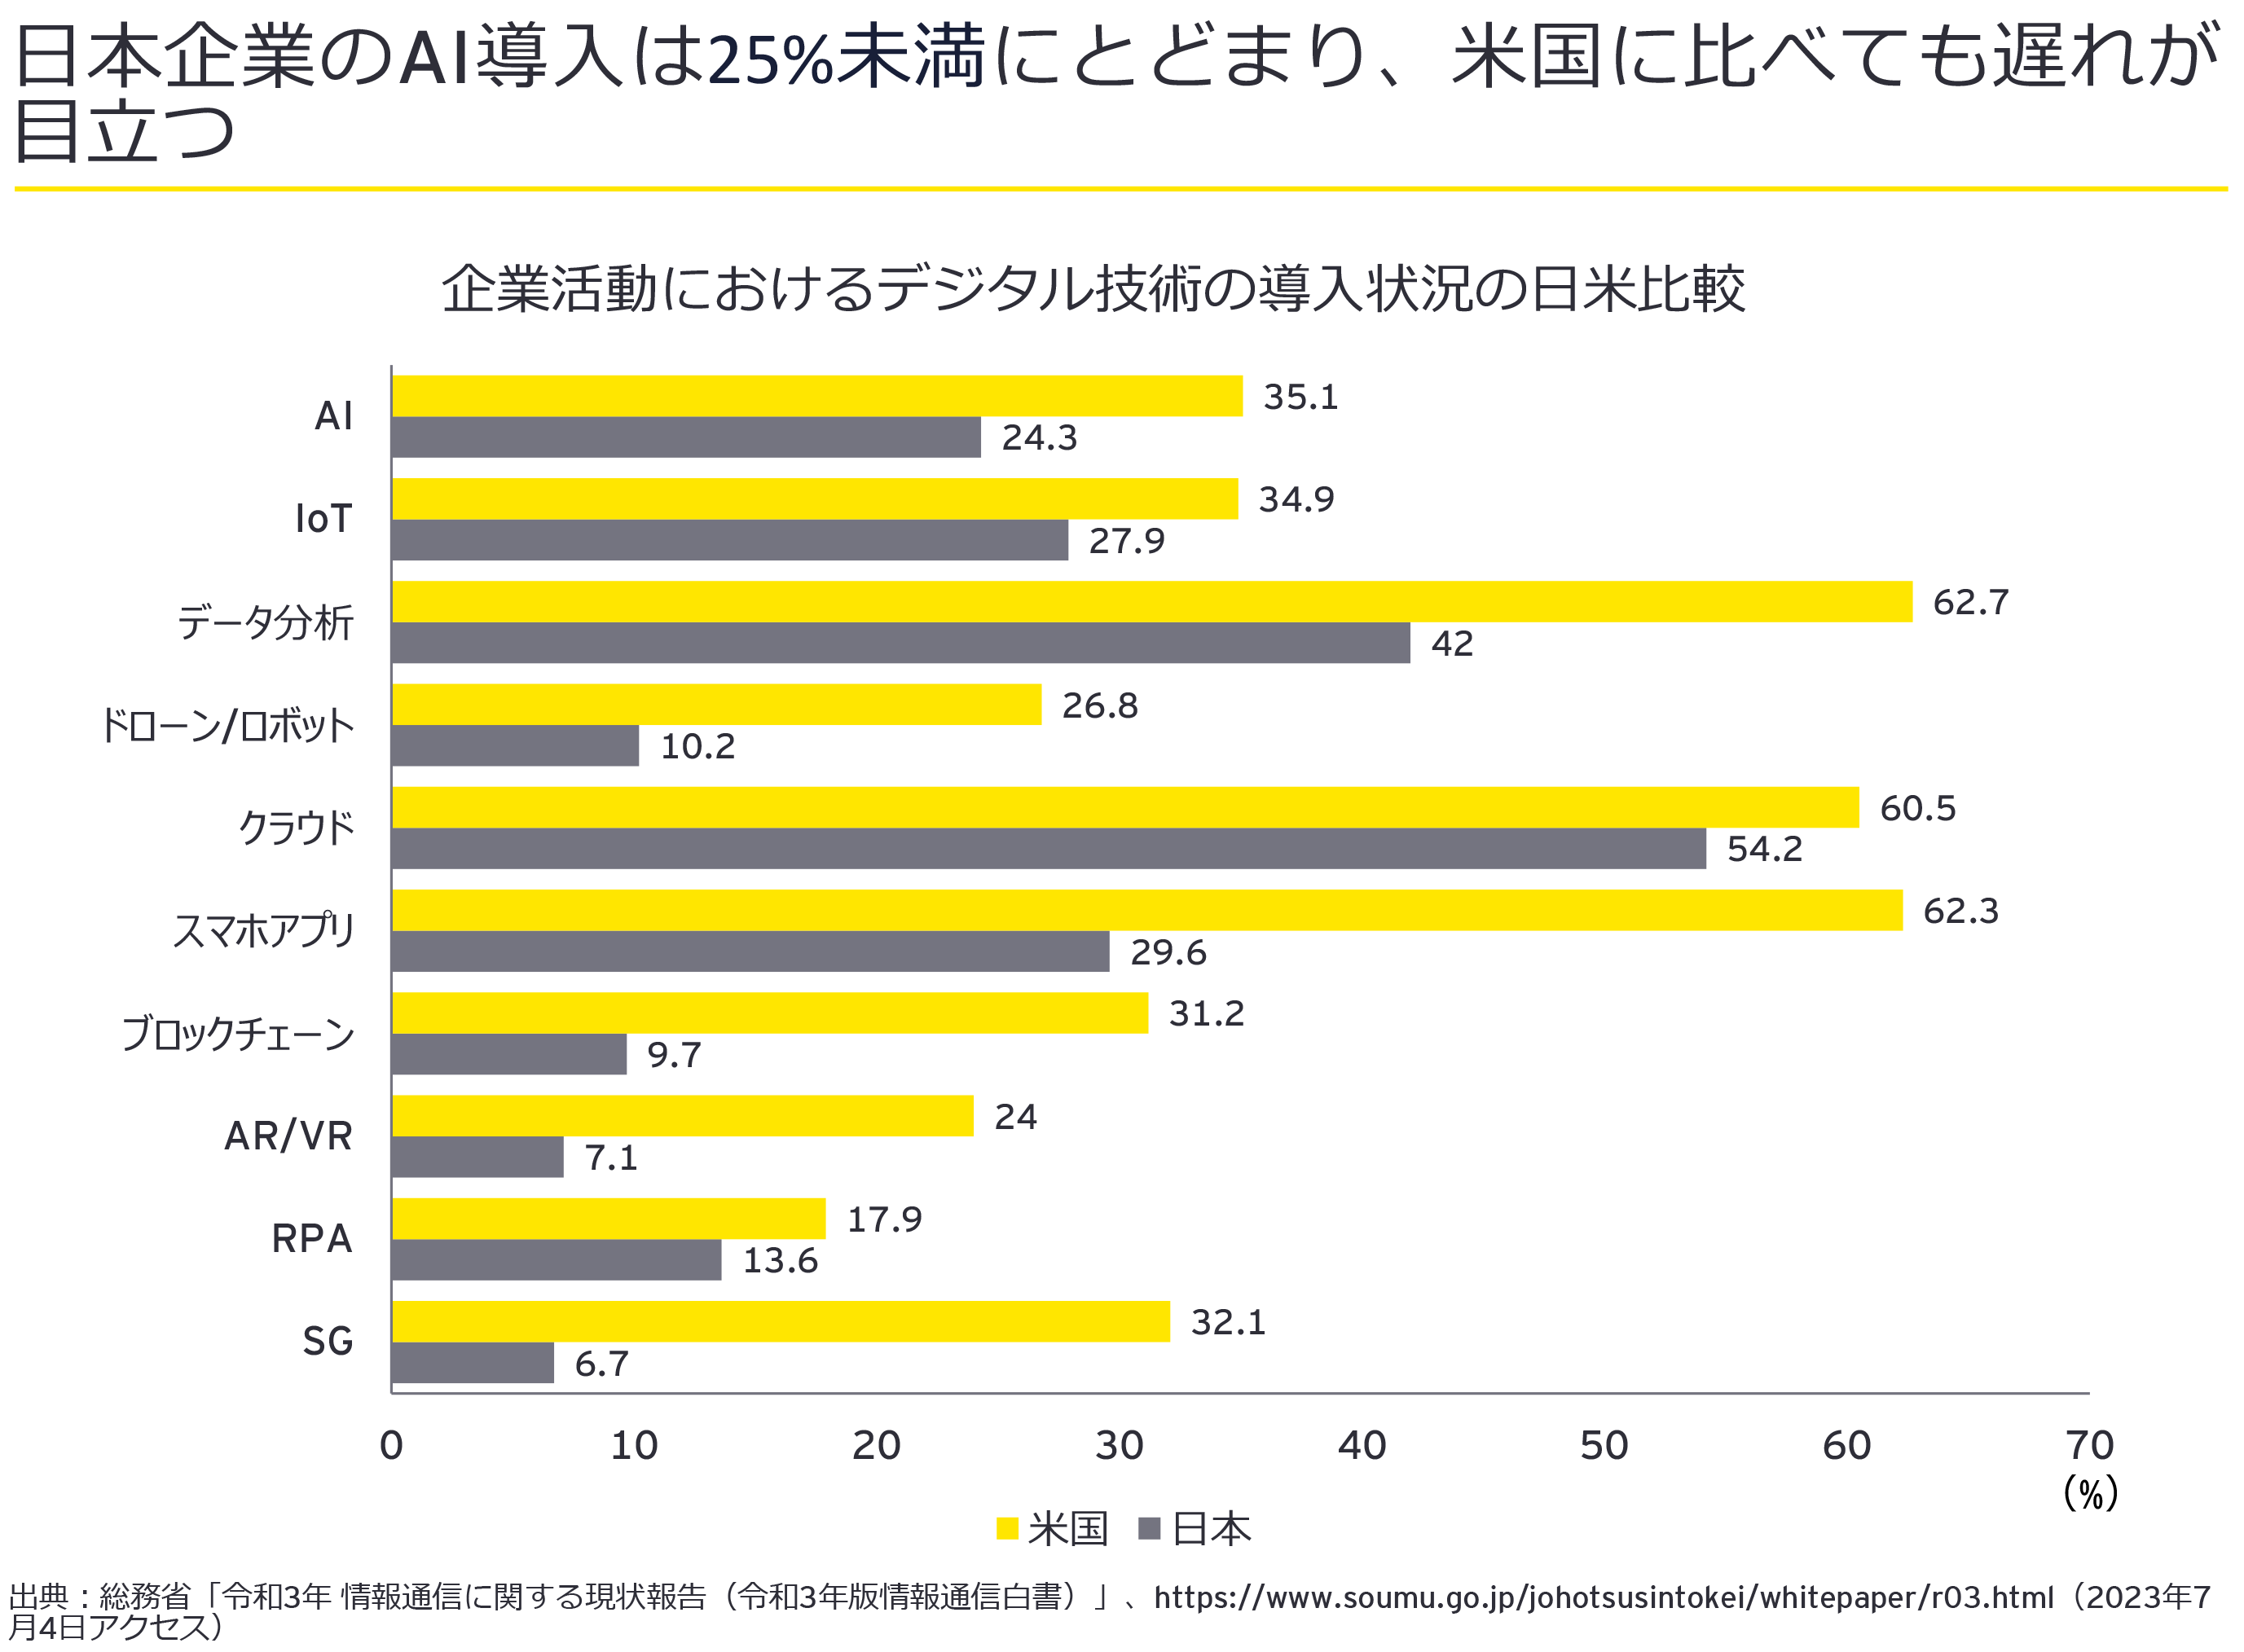 図1：日本企業のAI導入は4社中1社以下にとどまり、米国に比べても遅れが目立つ